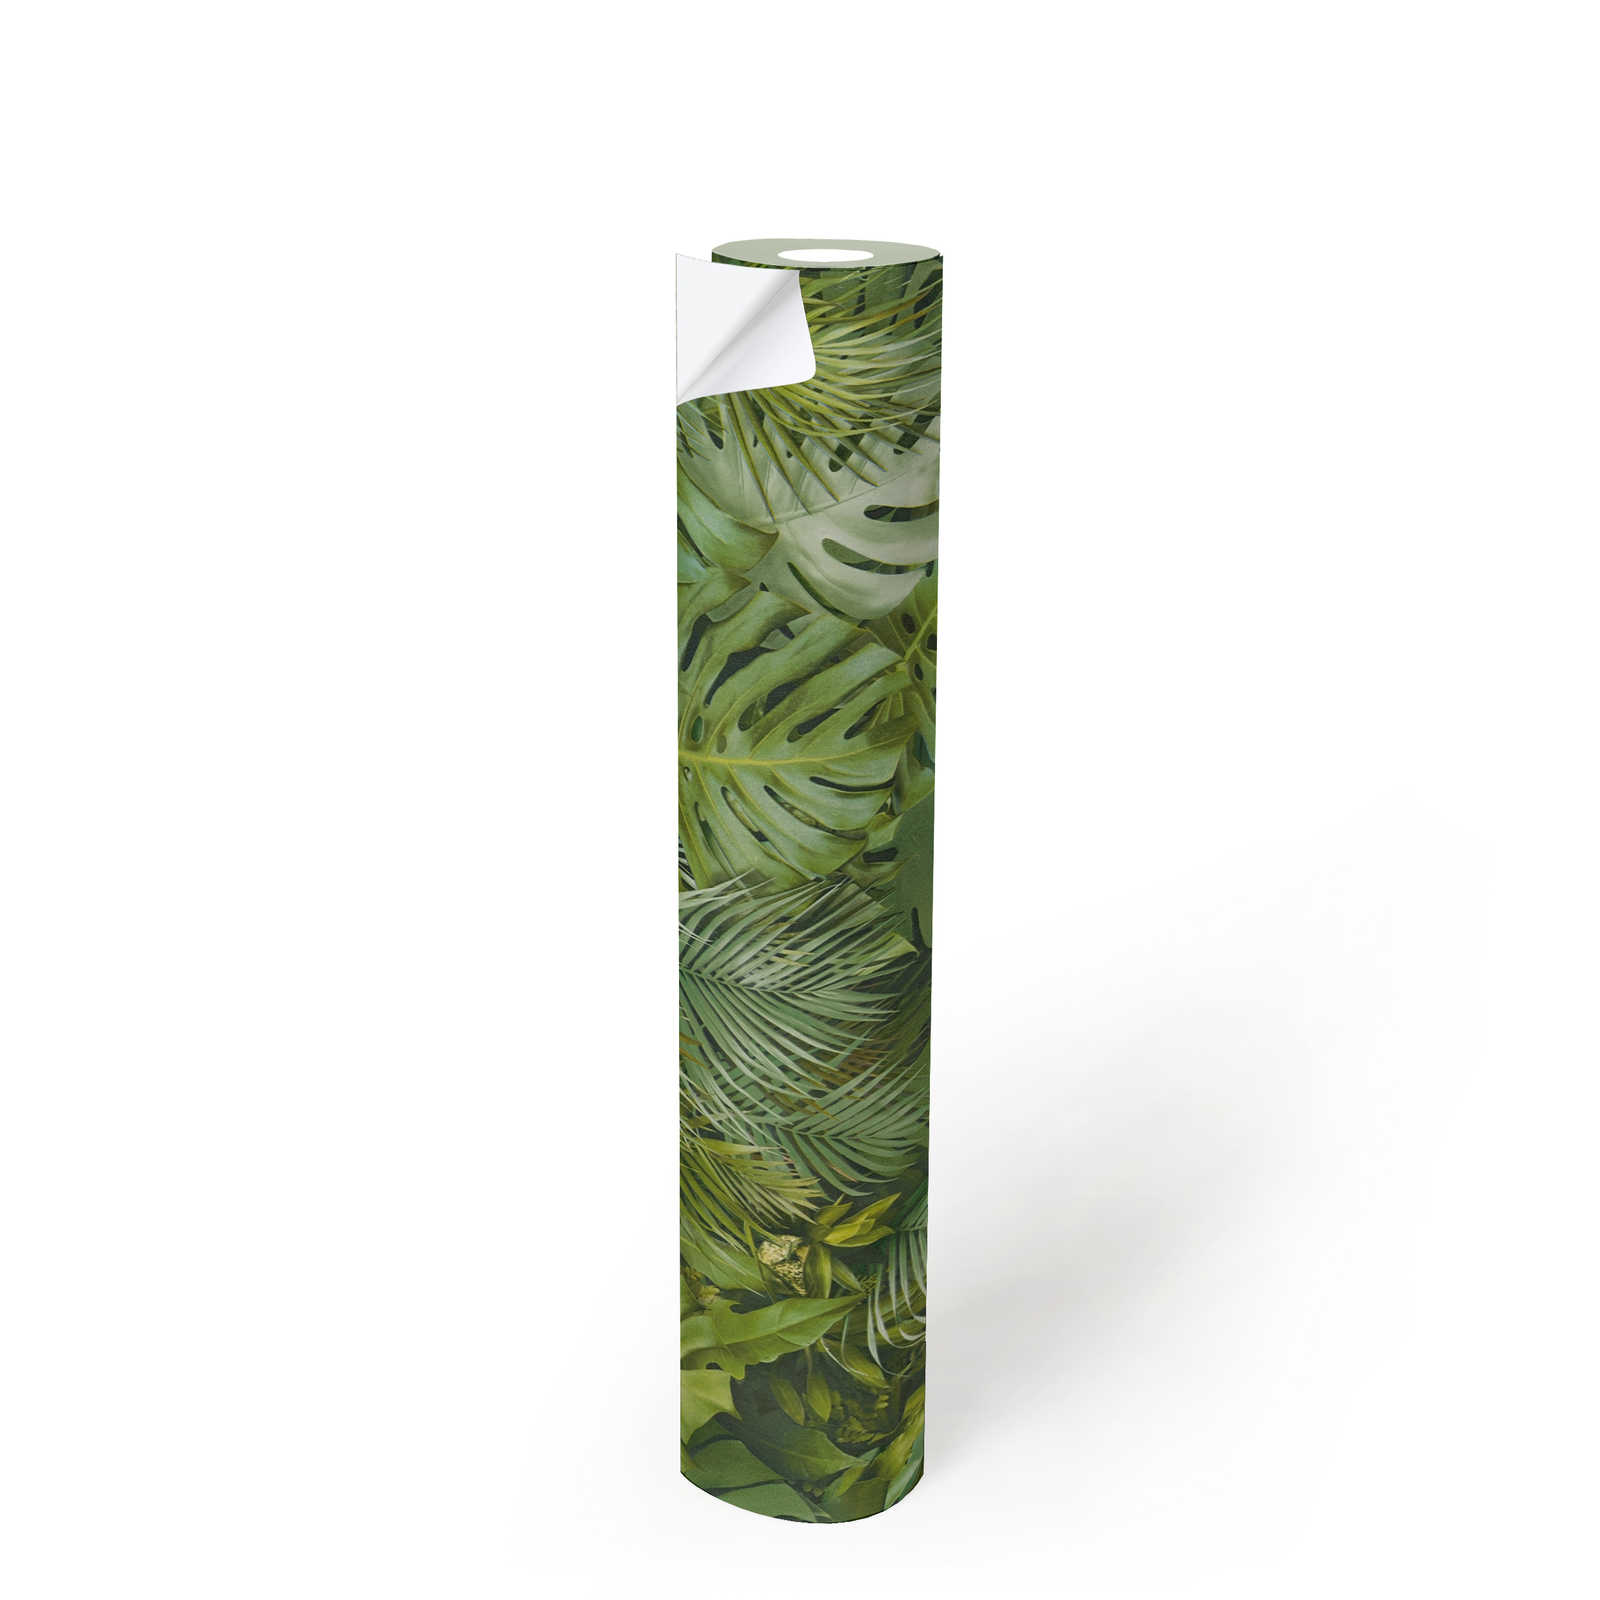             Zelfklevend behangpapier | jungle patroon in 3D optiek - groen
        